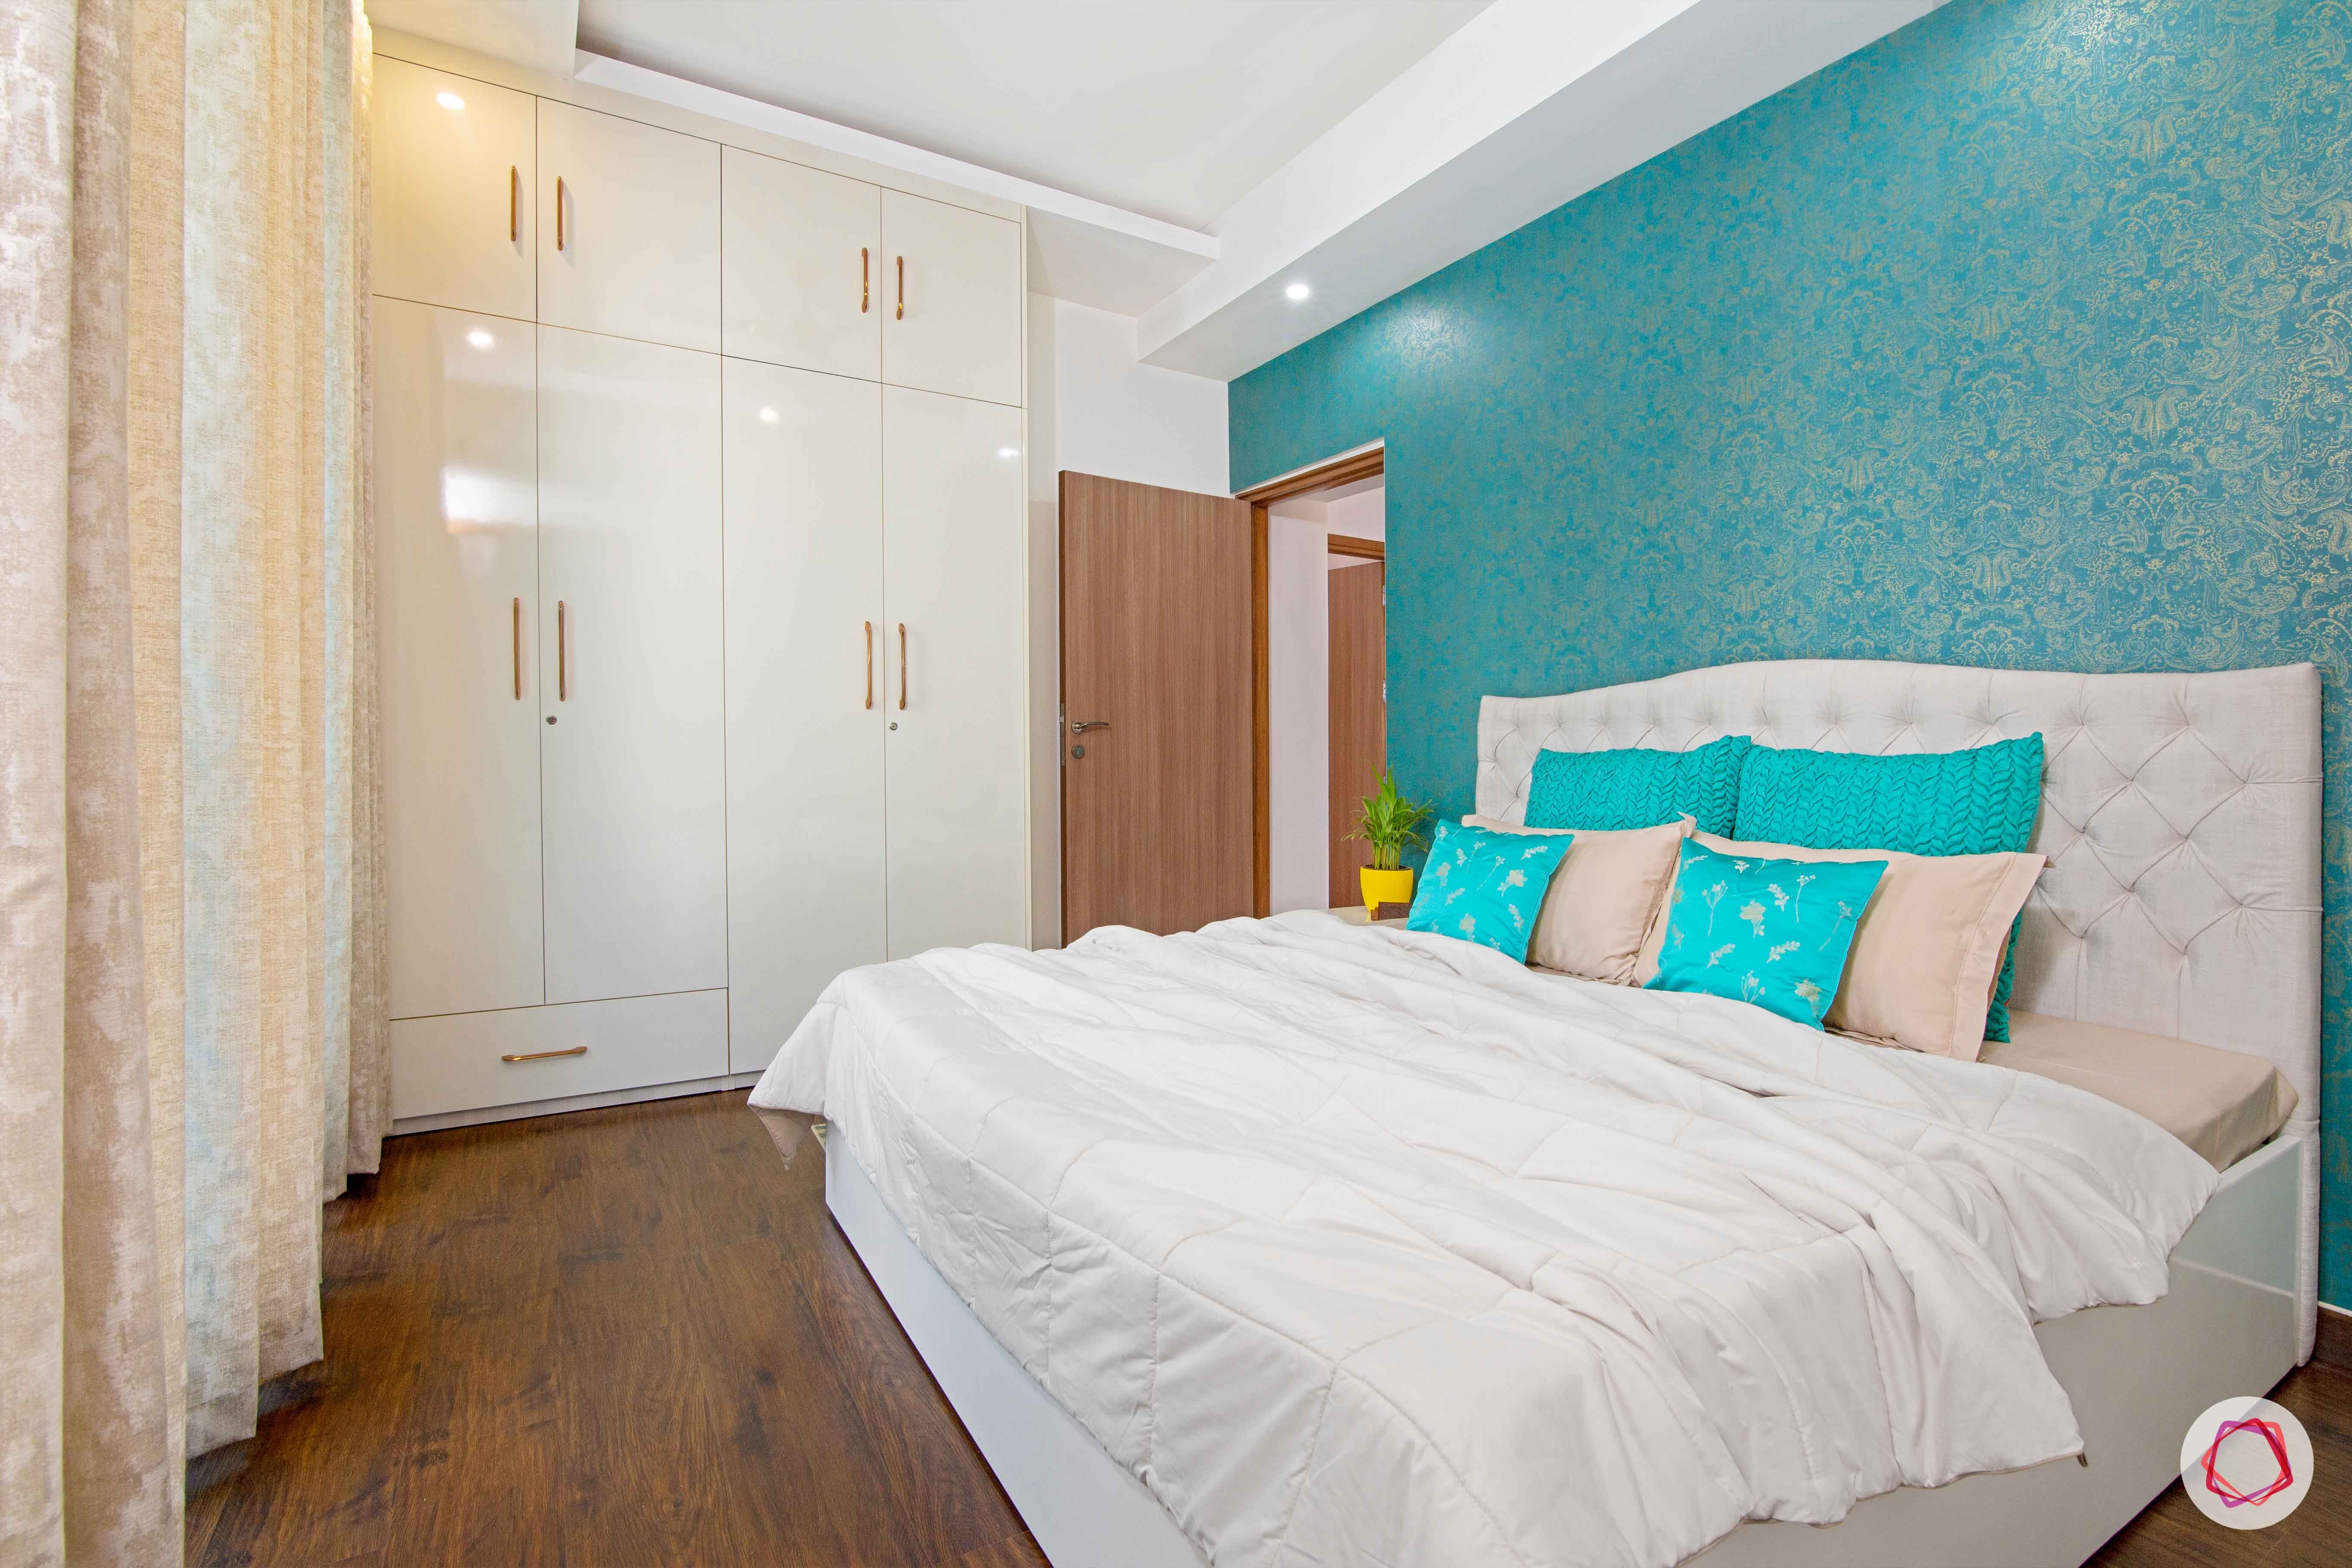 tdi ourania_guest bedroom_white bedroom_swing door wardrobe